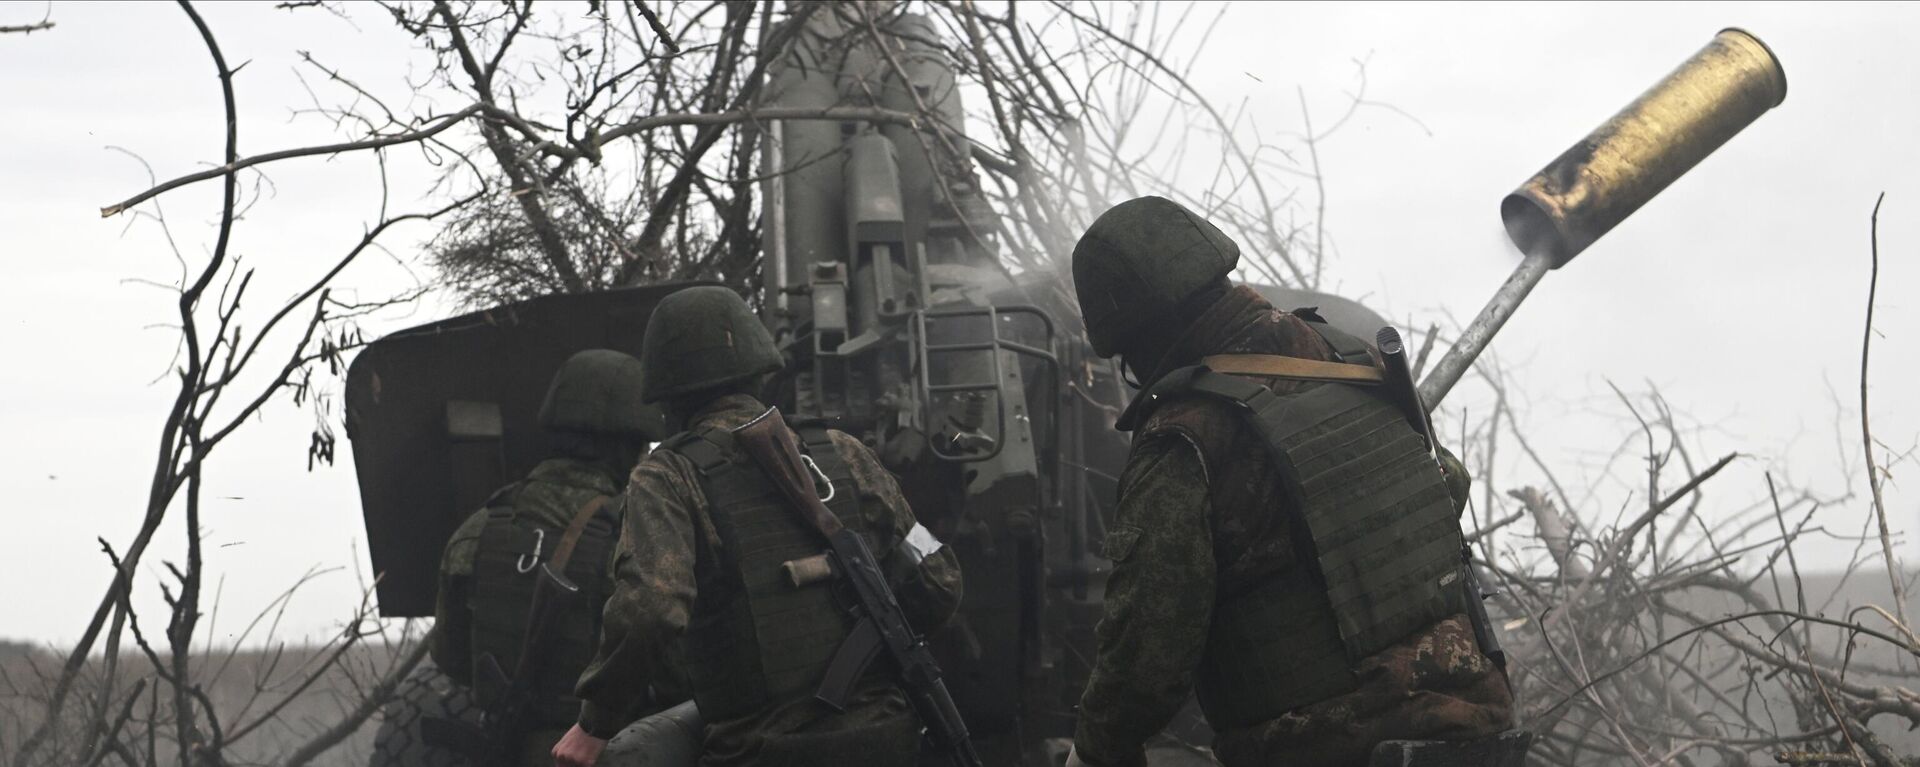 مدفعية القوات المسلحة الروسية تطلق النار على مواقع القوات المسلحة الأوكرانية من مدفع هاوتزر مستا-بي في المنطقة الجنوبية من منطقة العملية العسكرية الخاصة في أوكرانيا - سبوتنيك عربي, 1920, 31.03.2023